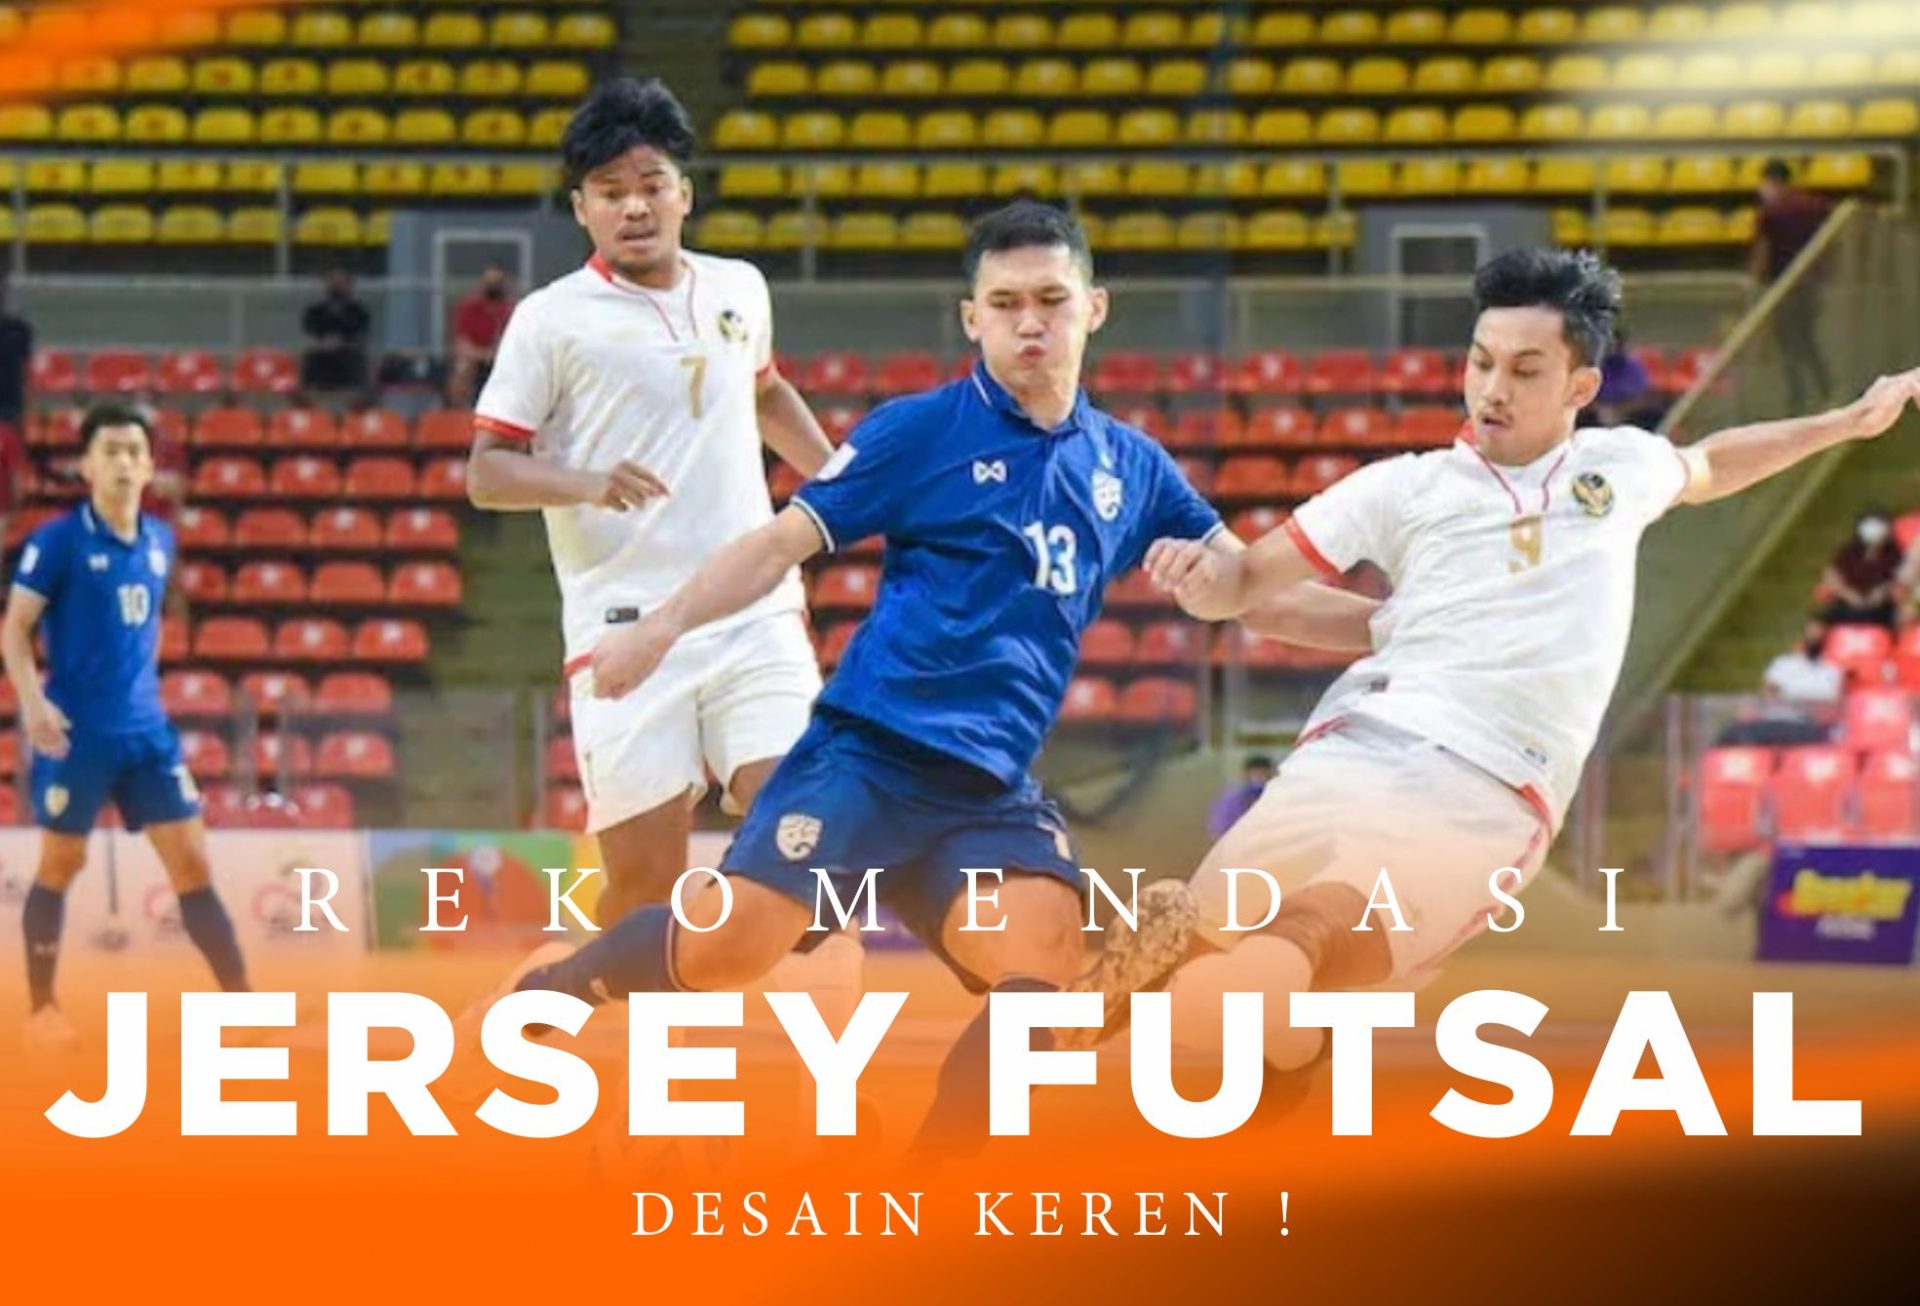 10 Rekomendasi Jersey Futsal Keren, Material Berkualitas !